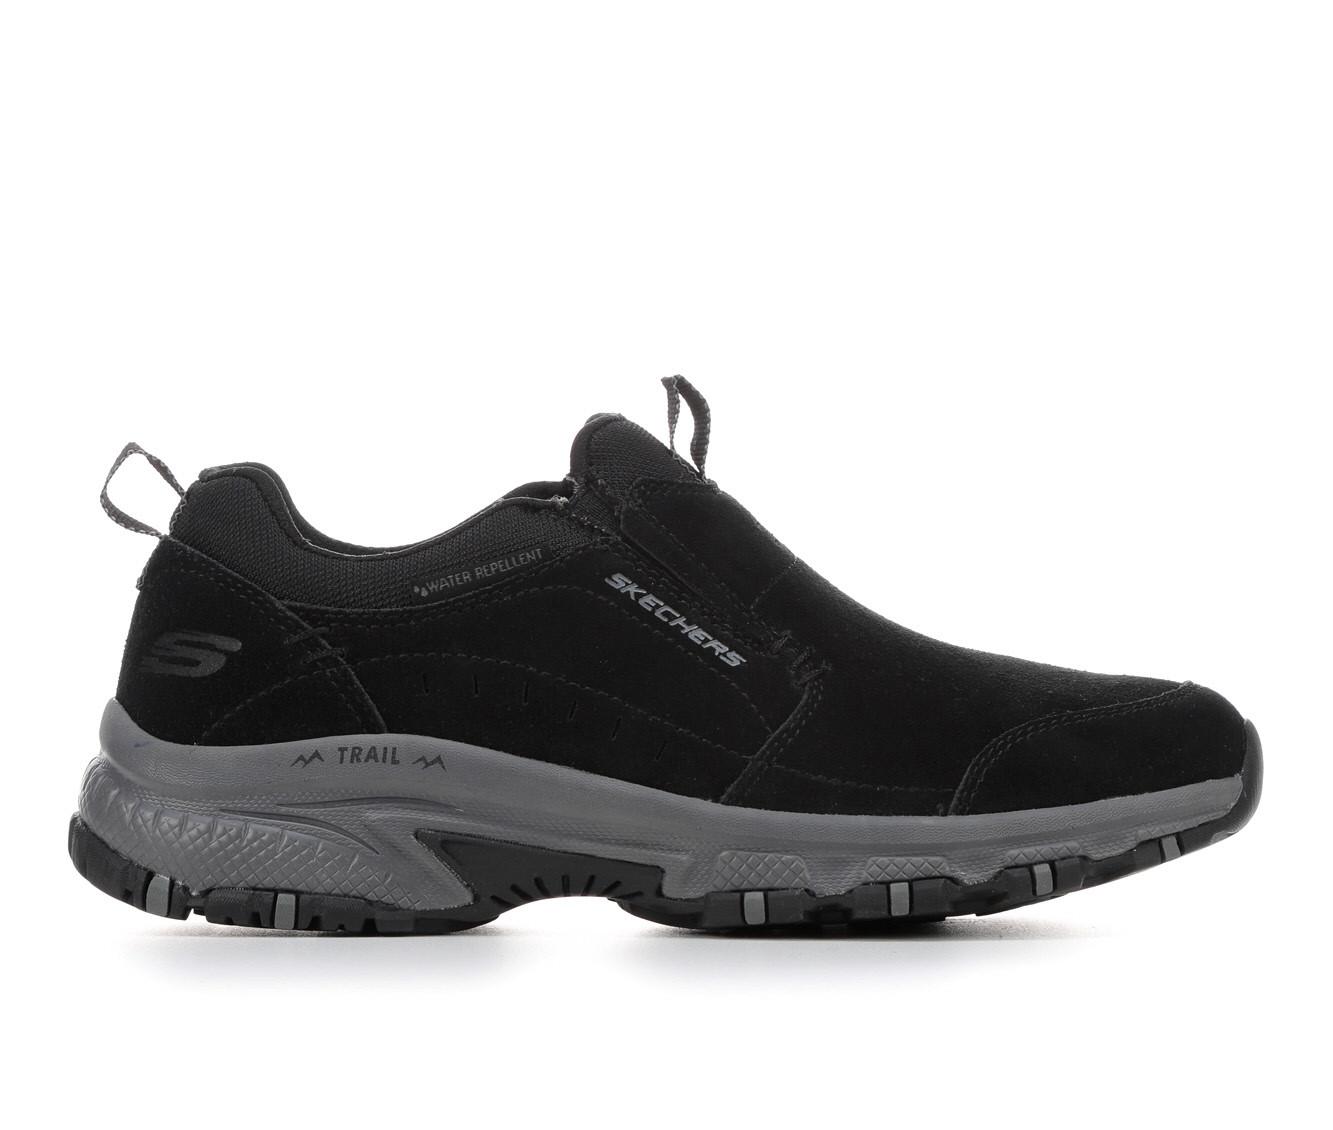 Women's Skechers Hillcrest 180010 Slip-On Hiking Shoes